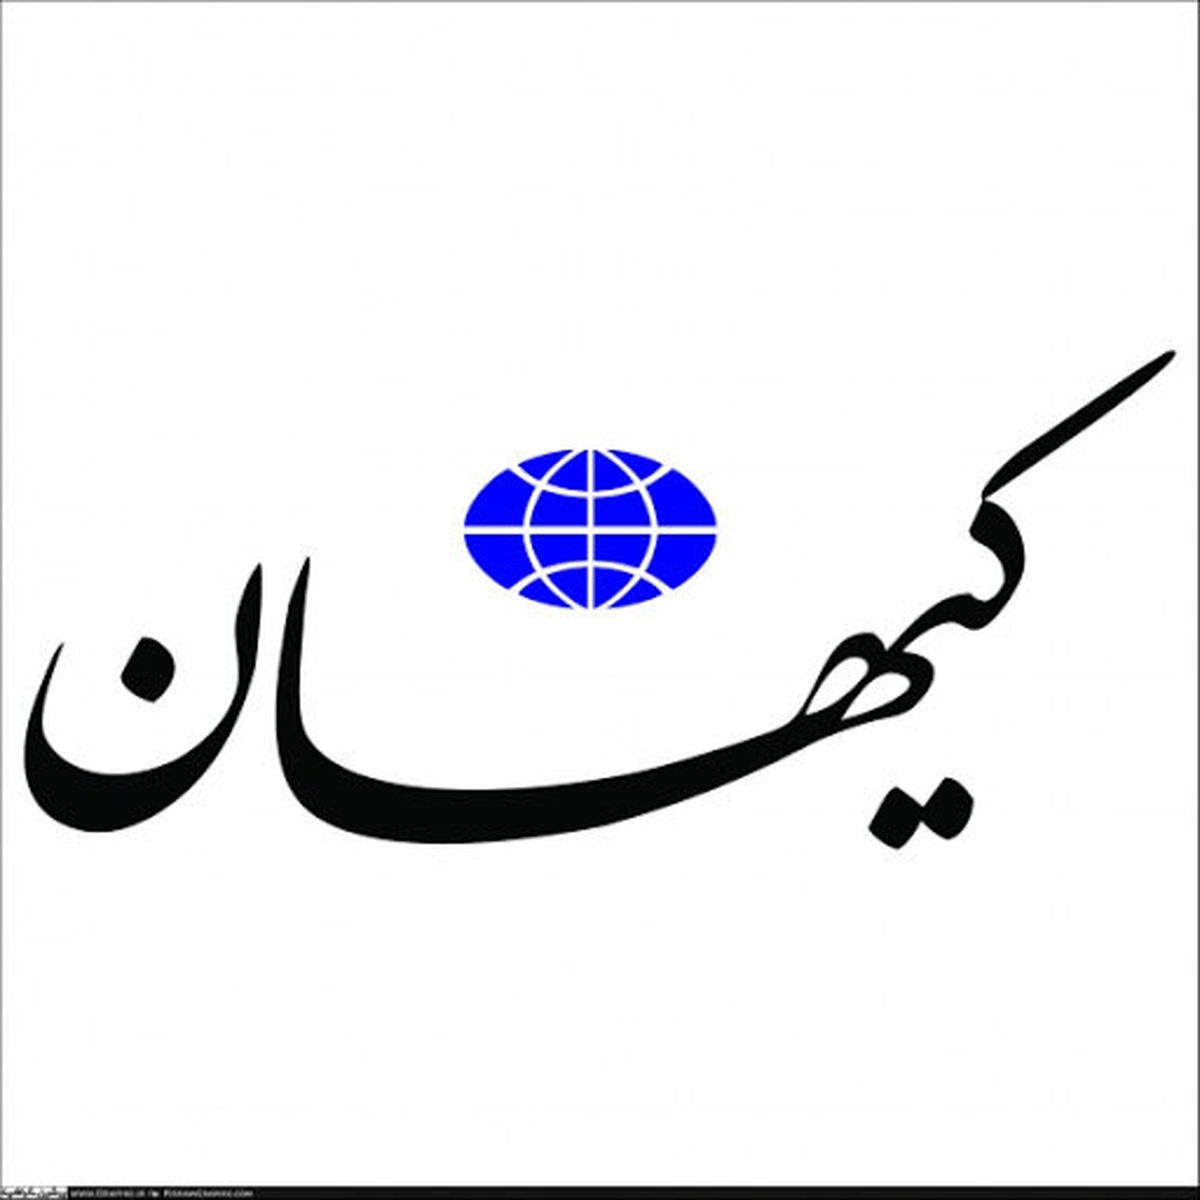 توپخانه کیهان علیه رسانه های رقیب/ پایگاه دشمنند و آب به آسیاب آن می ریزند